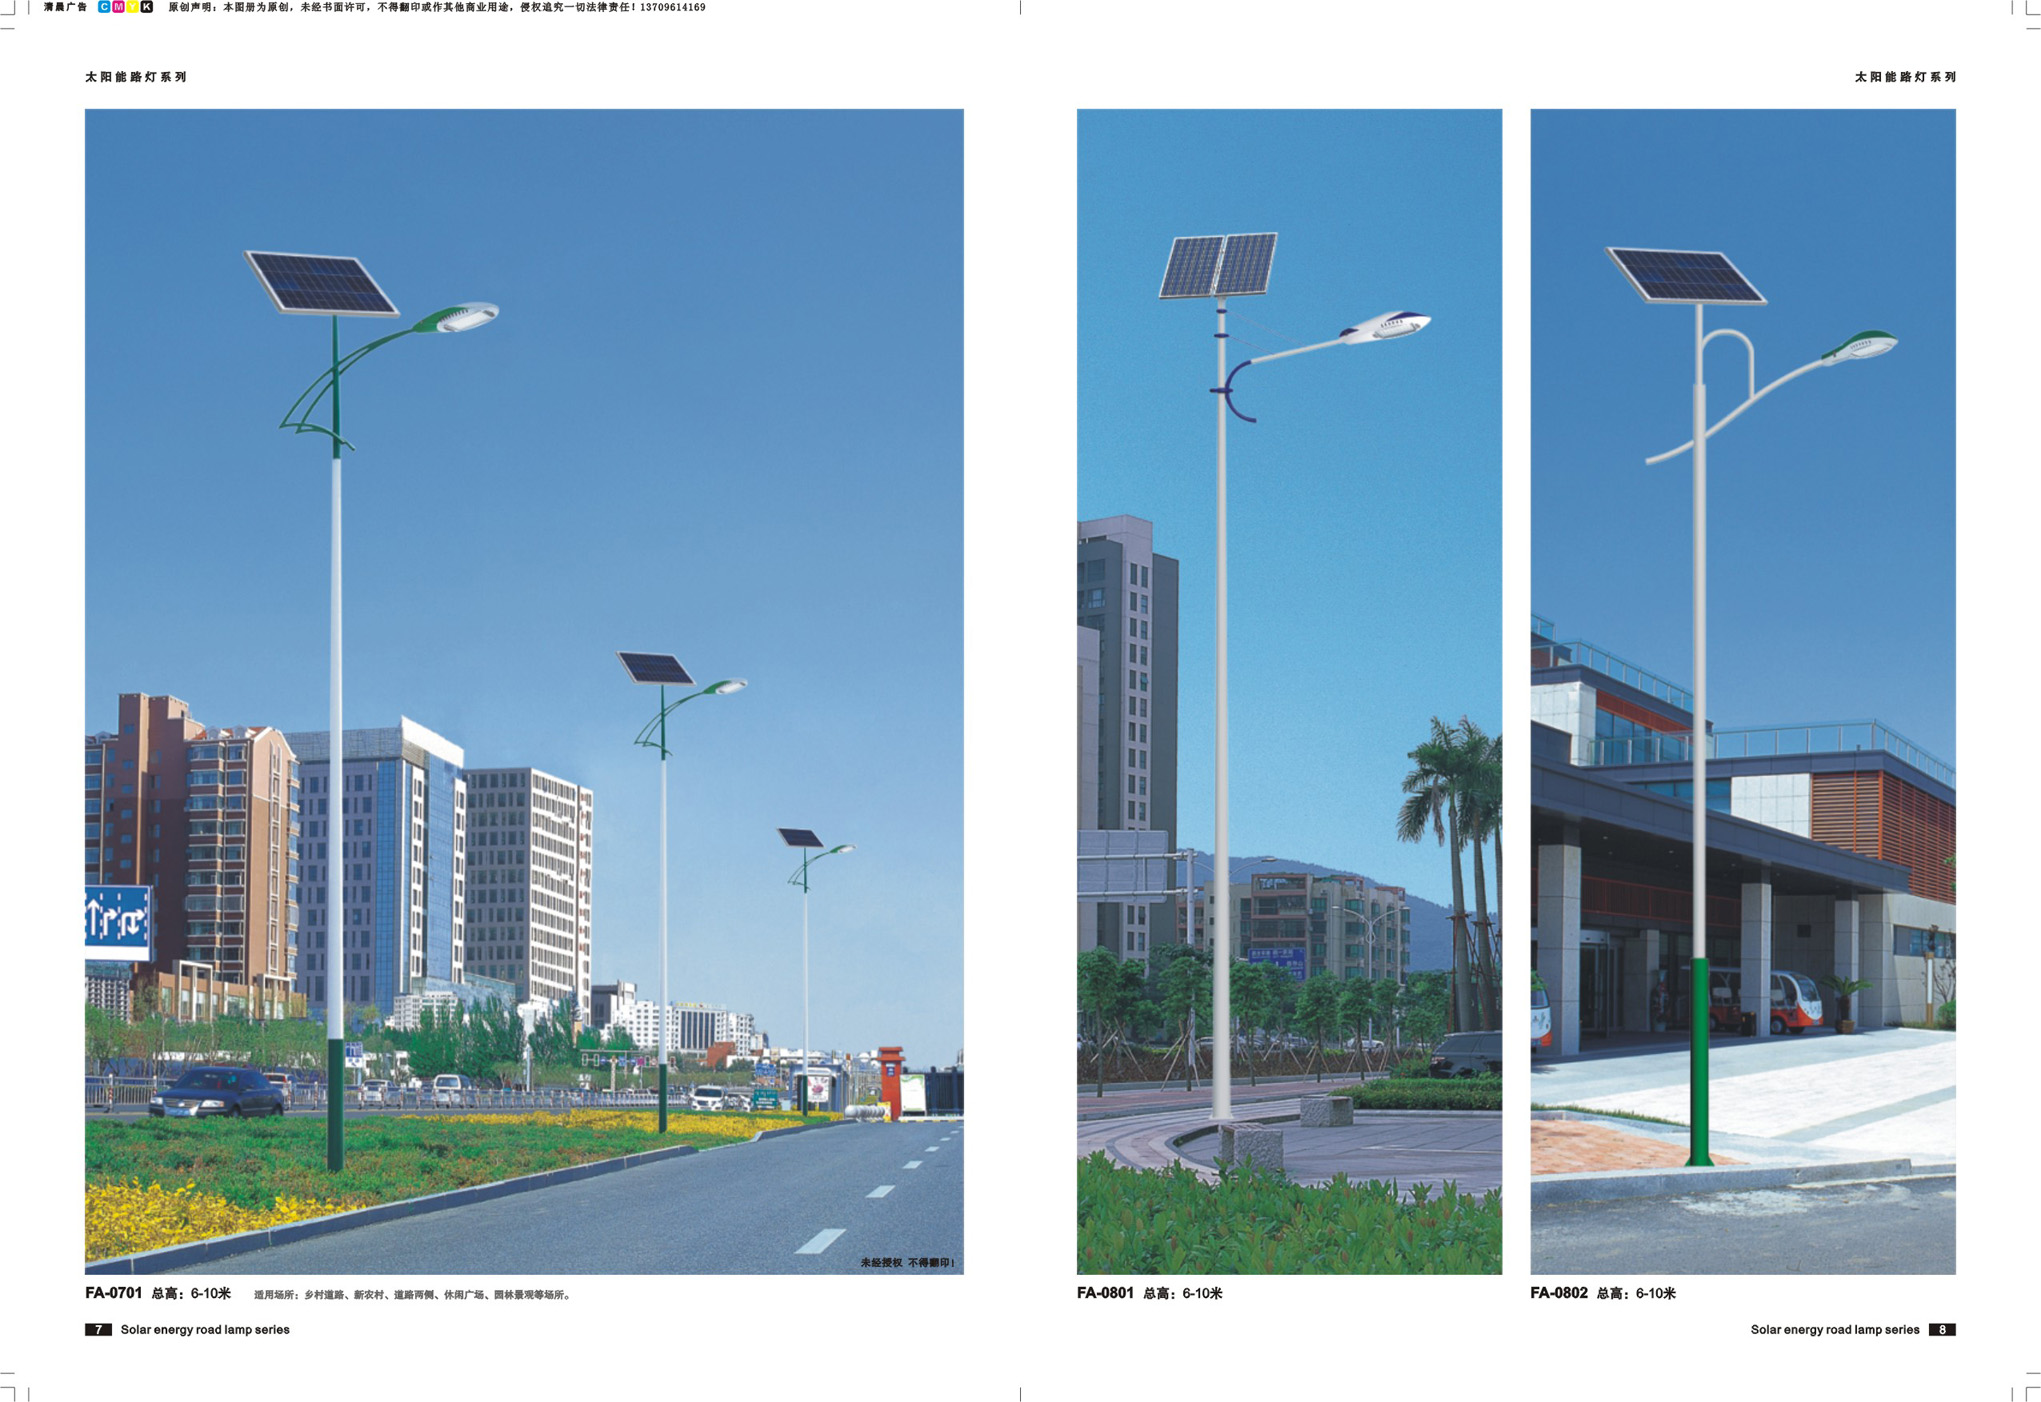 太阳能、LED高杆灯 节能环保 专阳能、LED高杆灯 节能环保图片